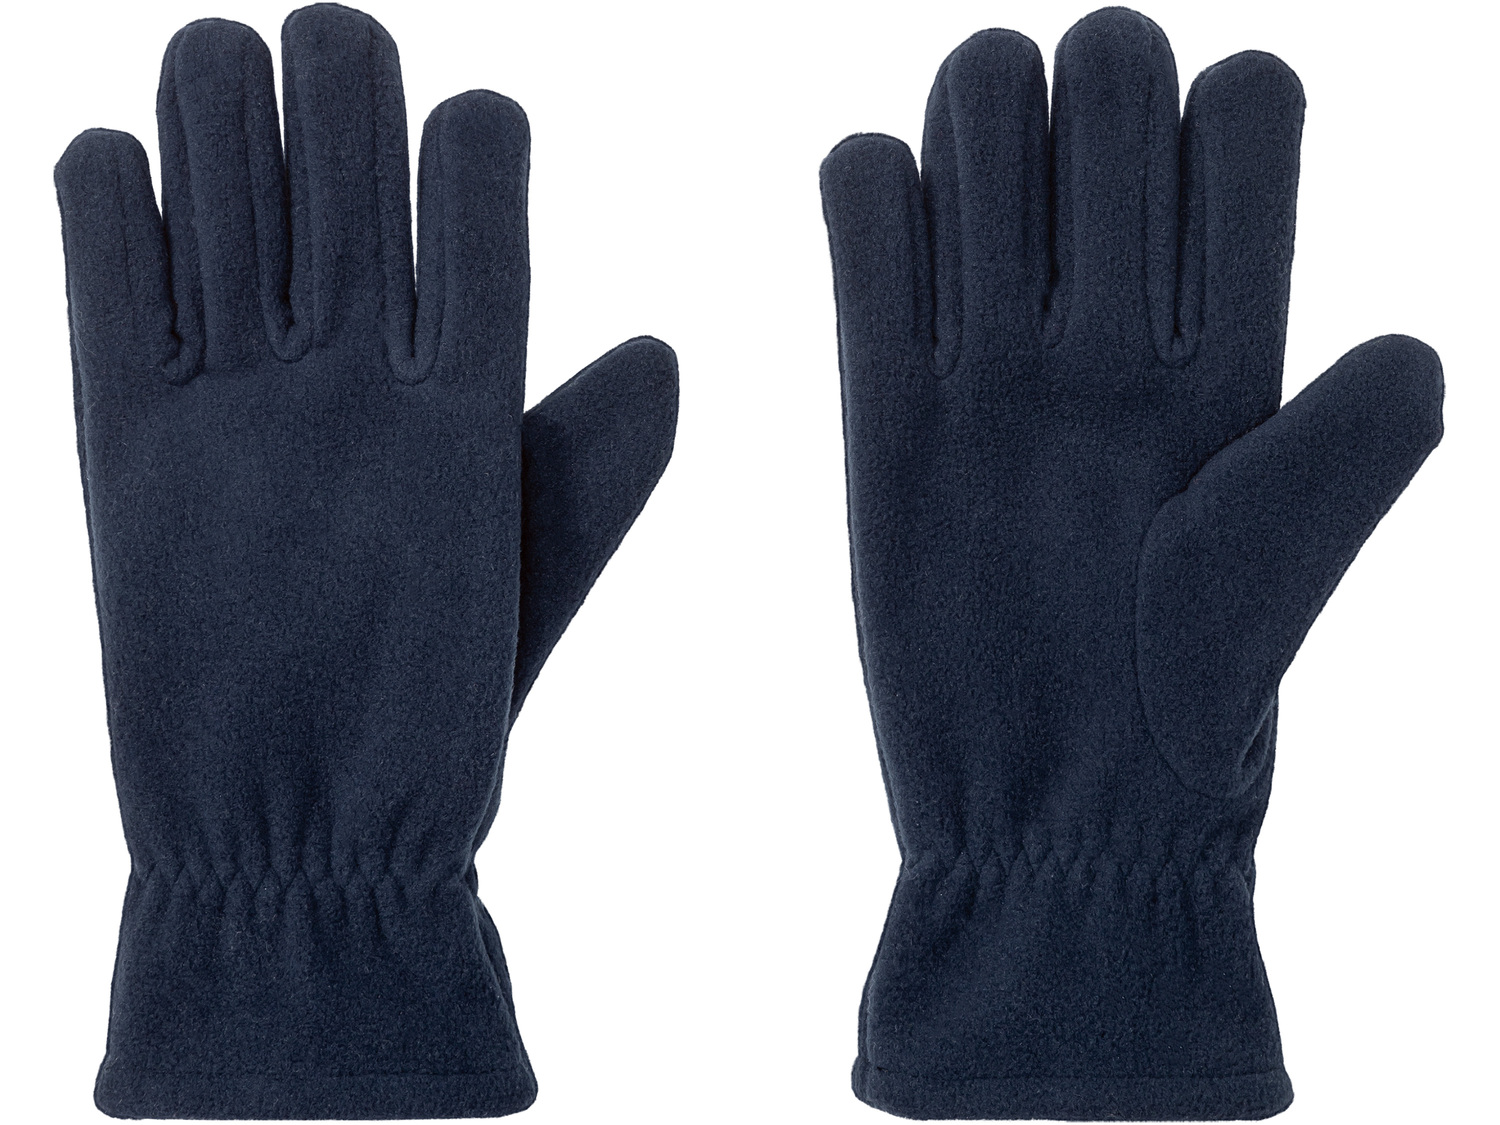 Czapka, szalik lub rękawiczki Crivit, cena 14,99 PLN 
3 rodzaje w 2 kolorach do ...